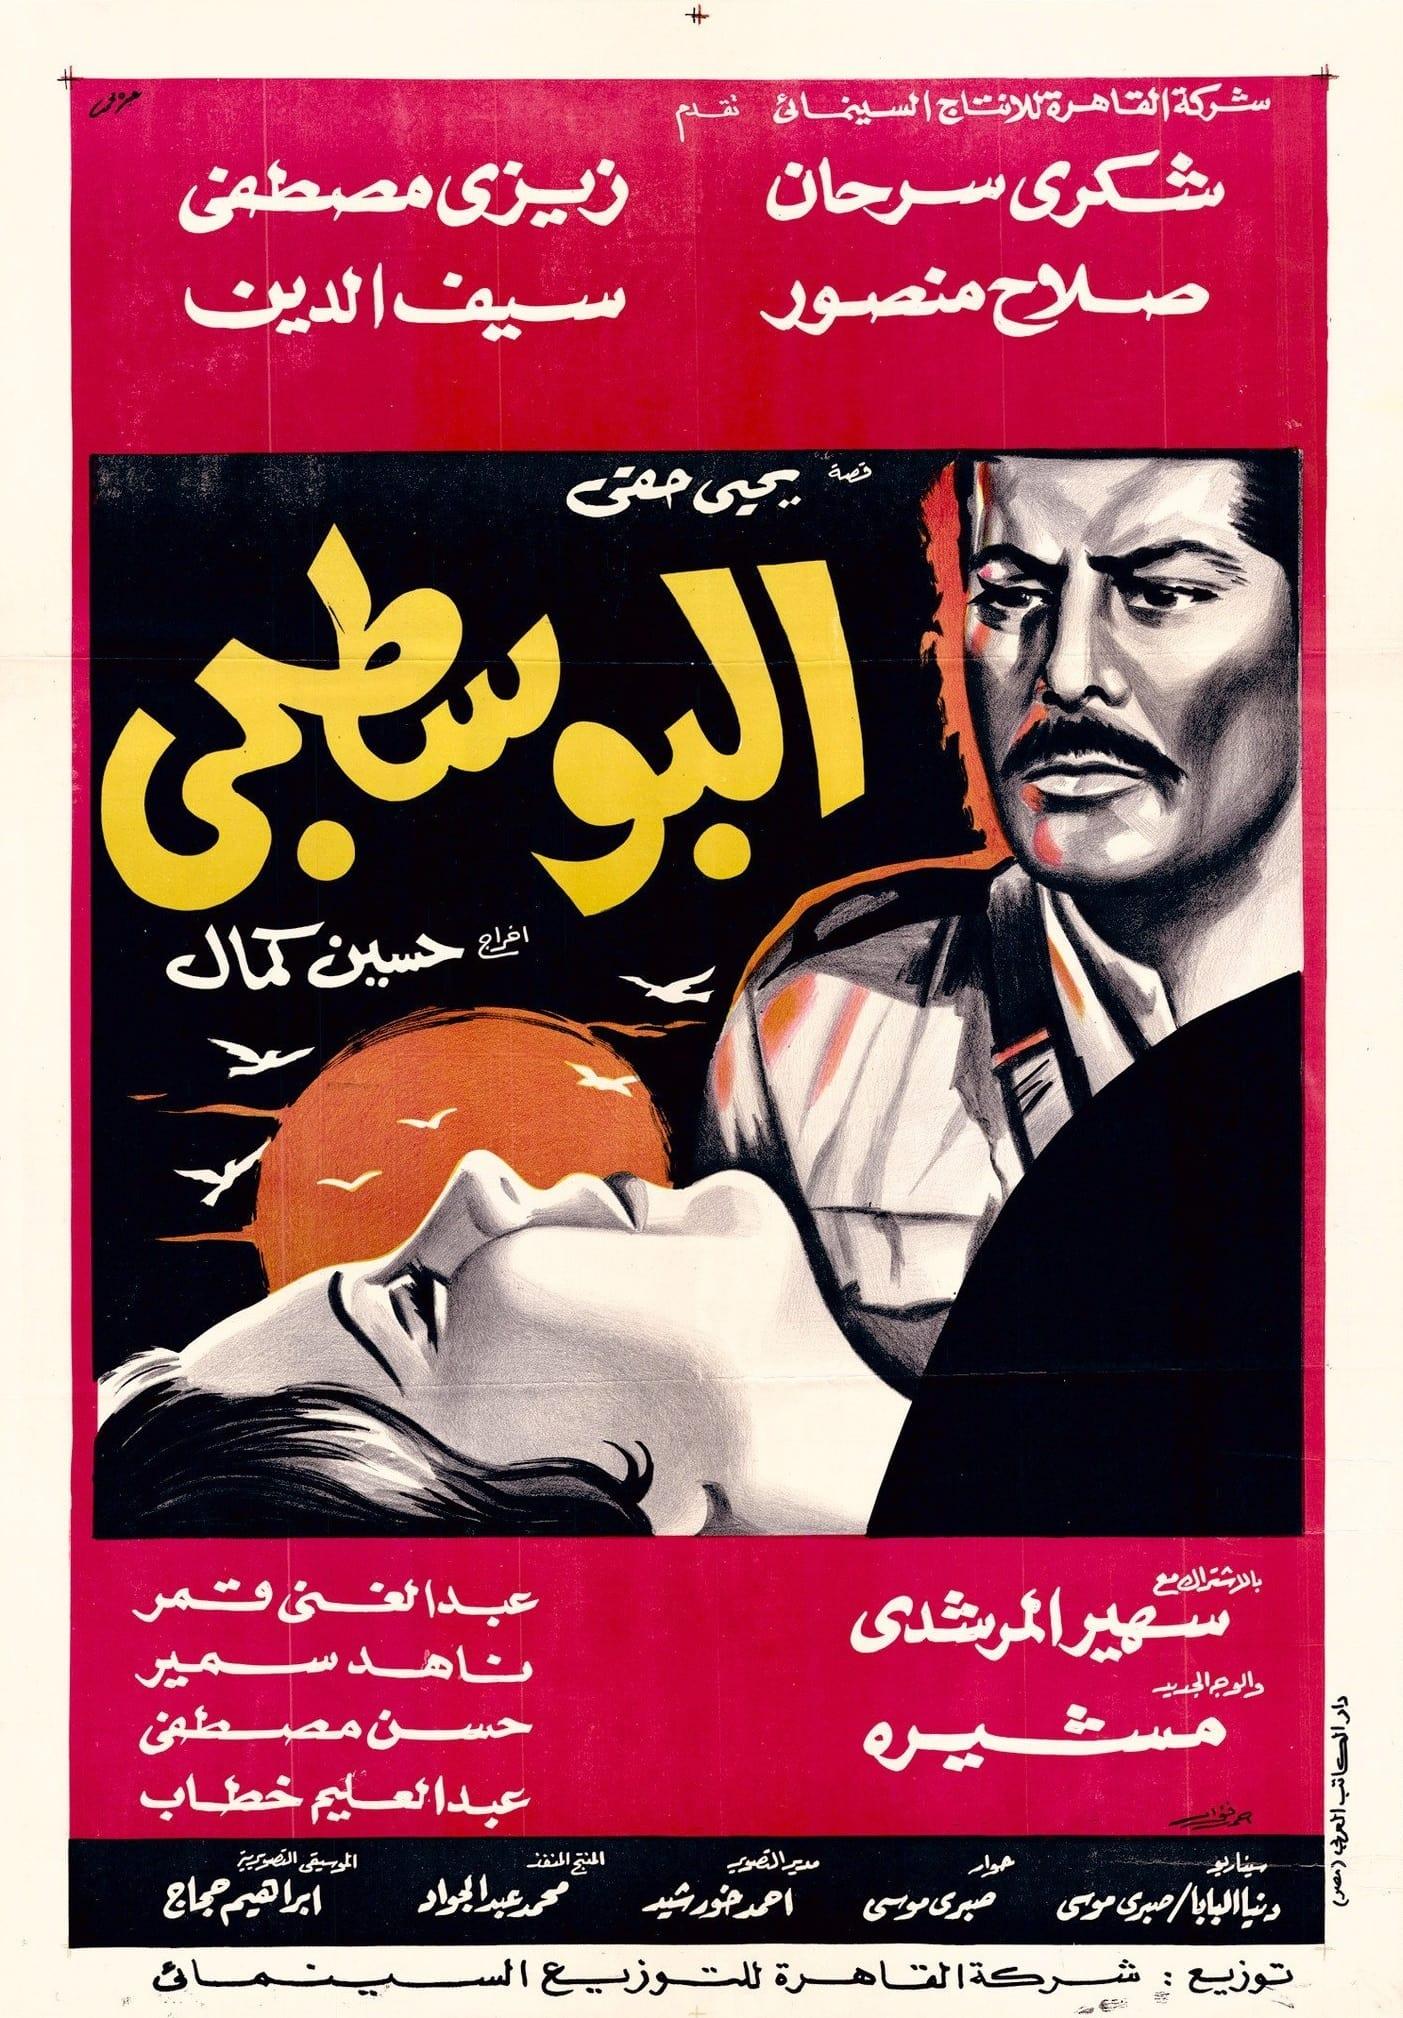 البوسطجي poster